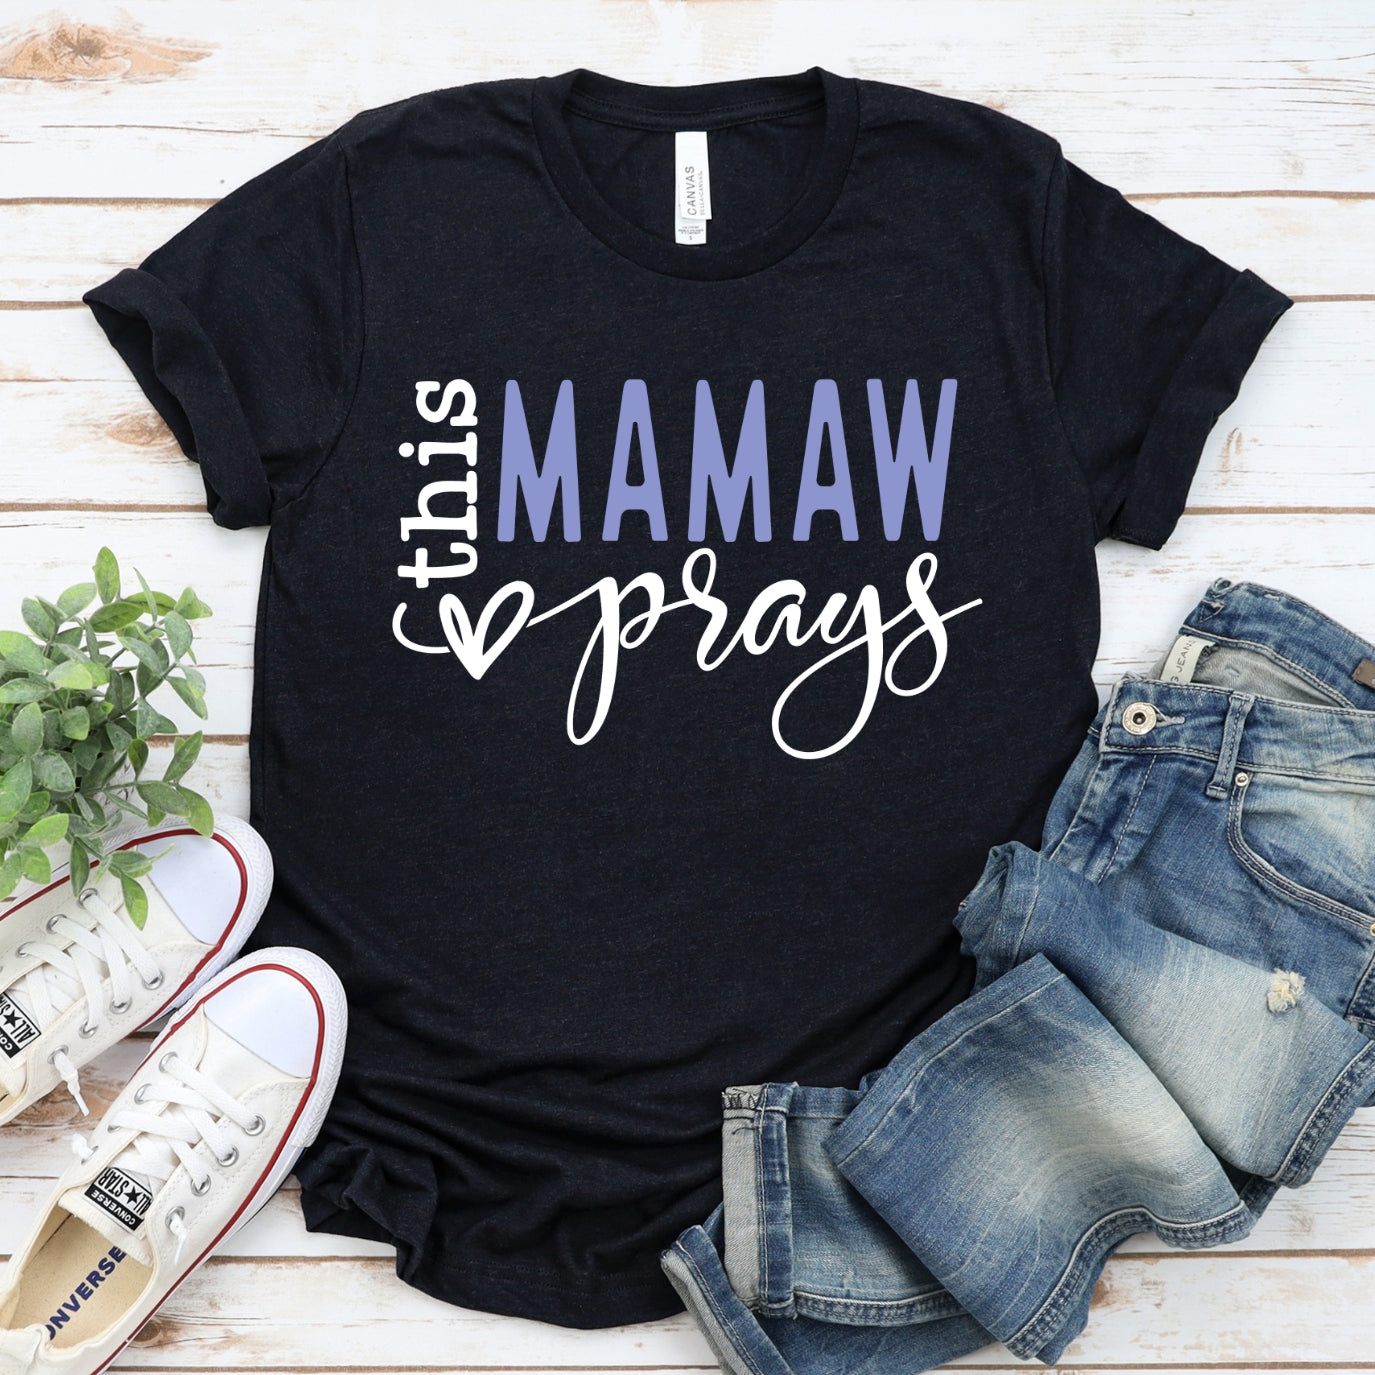 This MaMaw Prays Women's T-Shirt